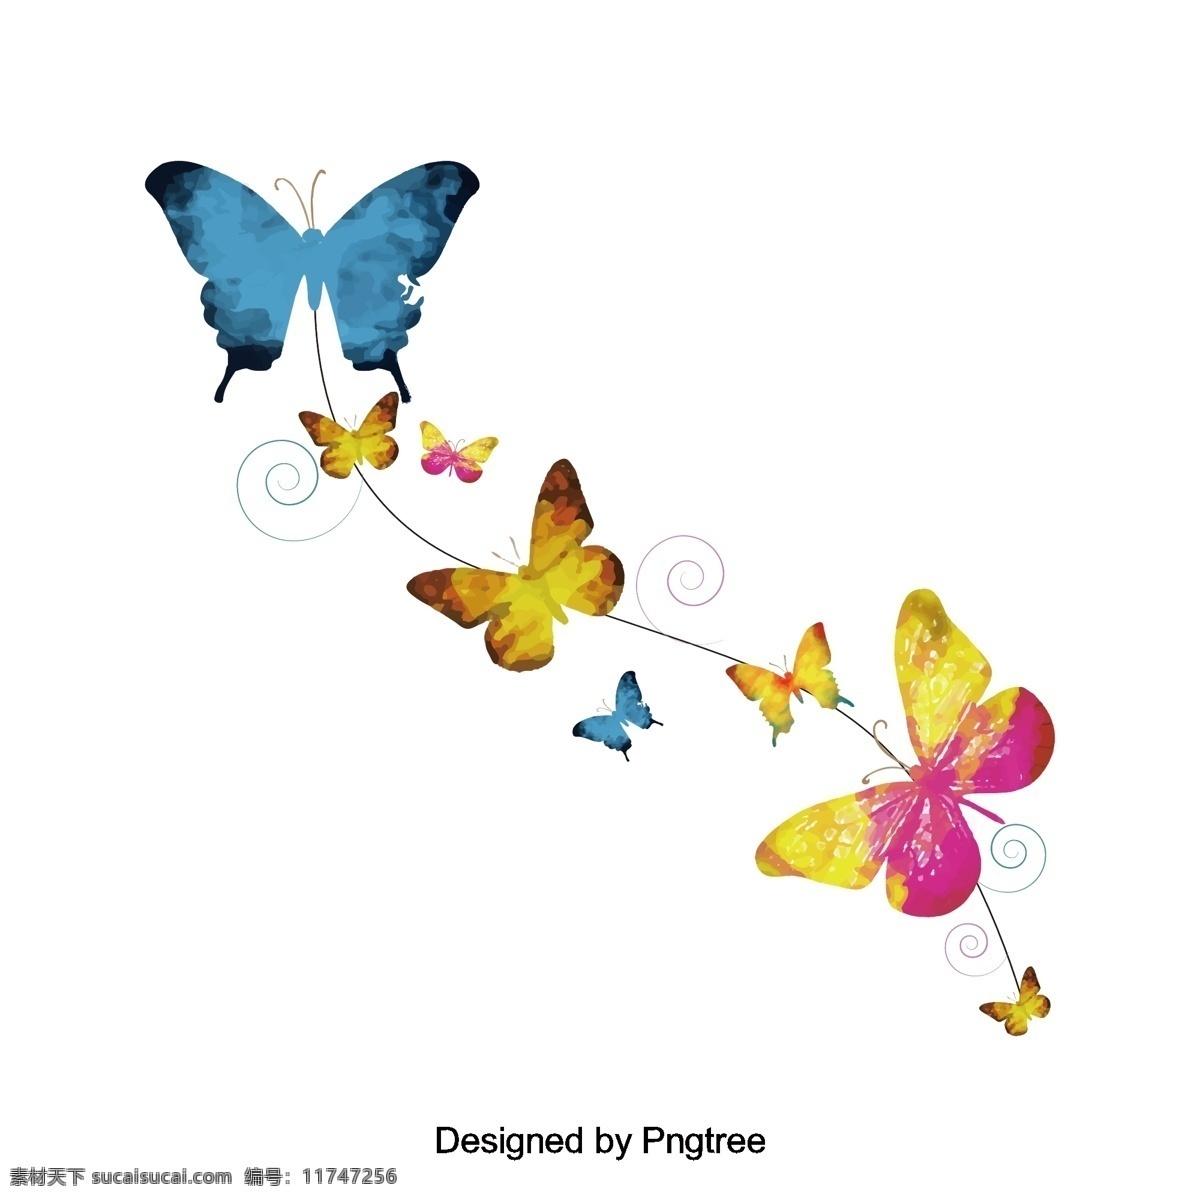 形设计简单 卡通 手绘 蝴蝶 昆虫 性质 元素 简洁 色彩 图案